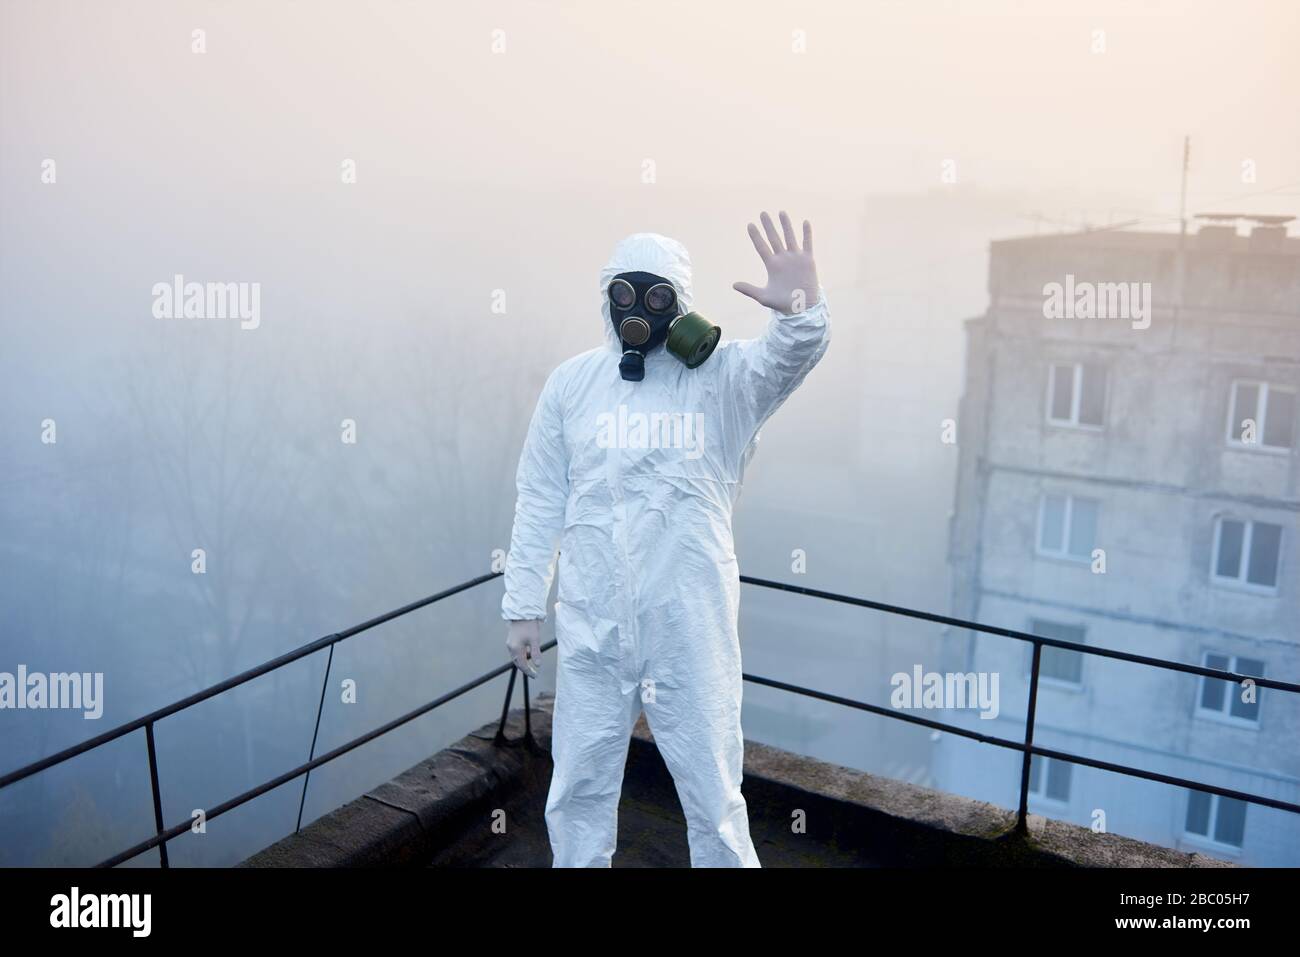 Uomo in vestito protettivo, mostrando segno di stop è al centro della fotografia istantanea sul tetto in caso di nebbia meteo, facendo la ricerca sull'inquinamento ambientale Foto Stock